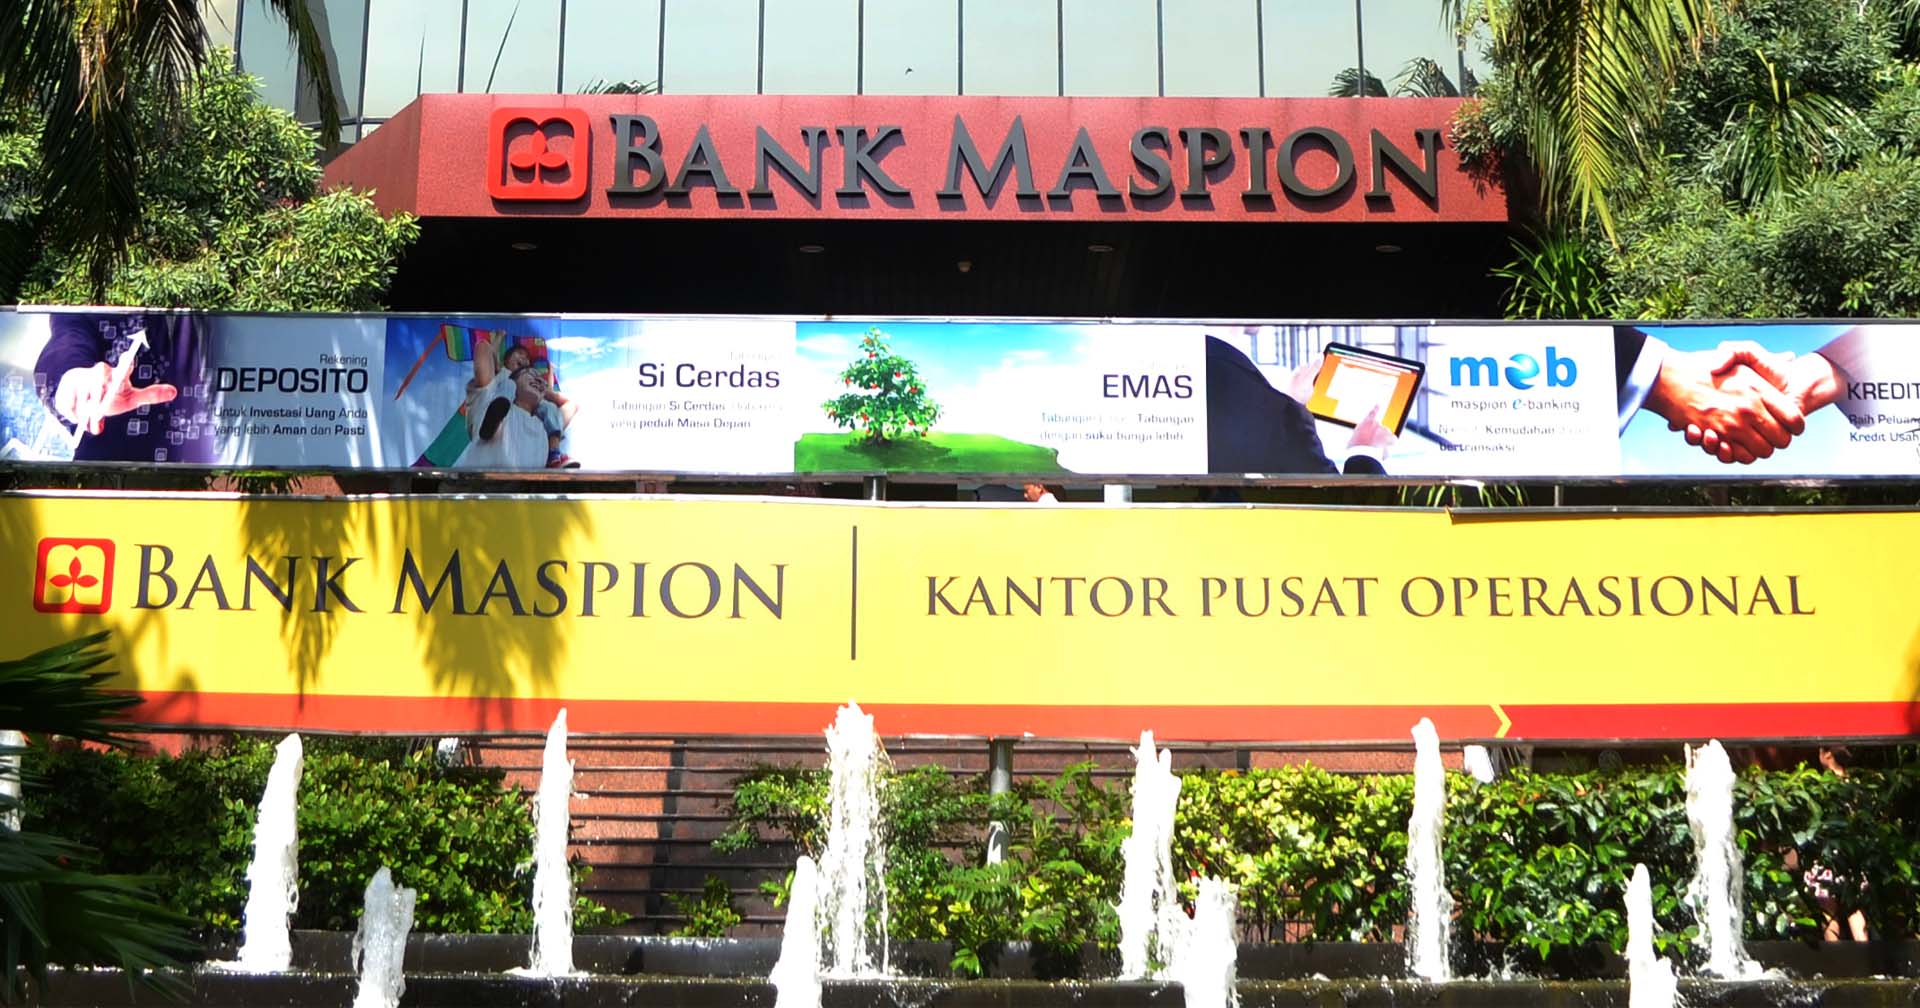 เคแบงก์ทุ่ม 7,556 ล้านบาท เข้าถือหุ้นธนาคารแมสเปี้ยนจากอินโดนีเซีย สัดส่วน 67.5%